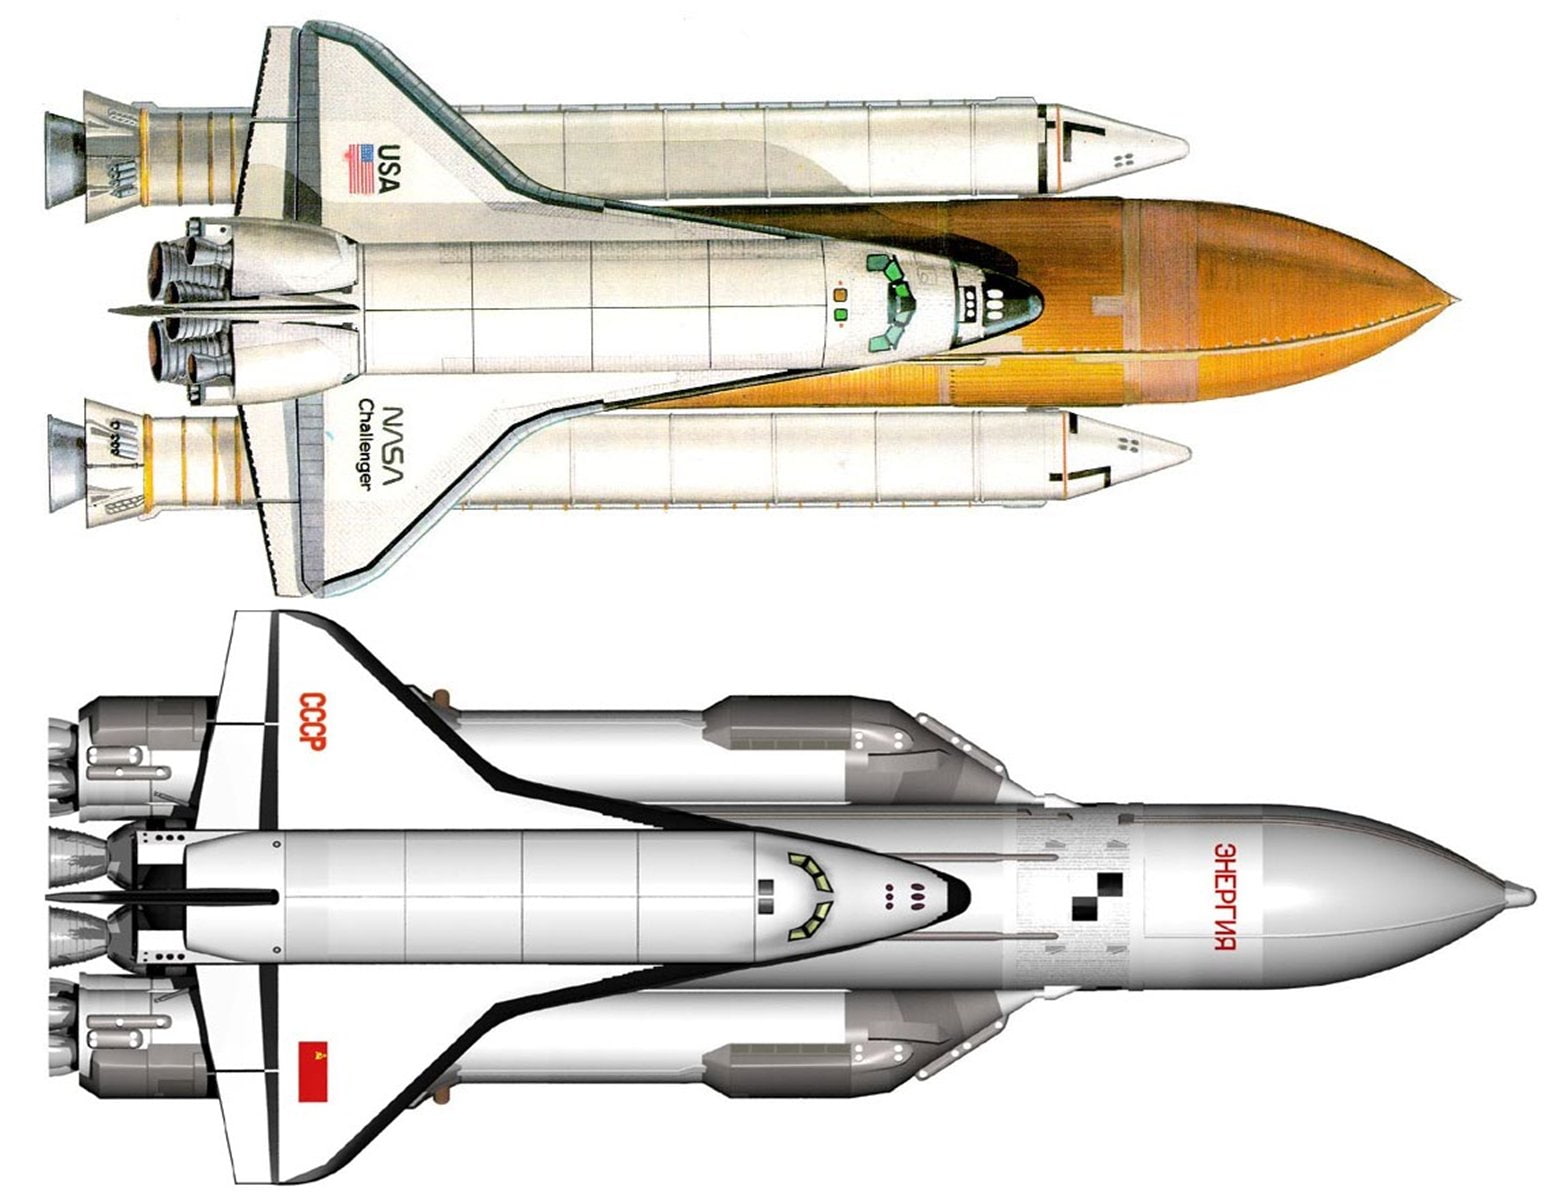 buran, cccp, challenger, masa, russian, shuttle, soviet, space